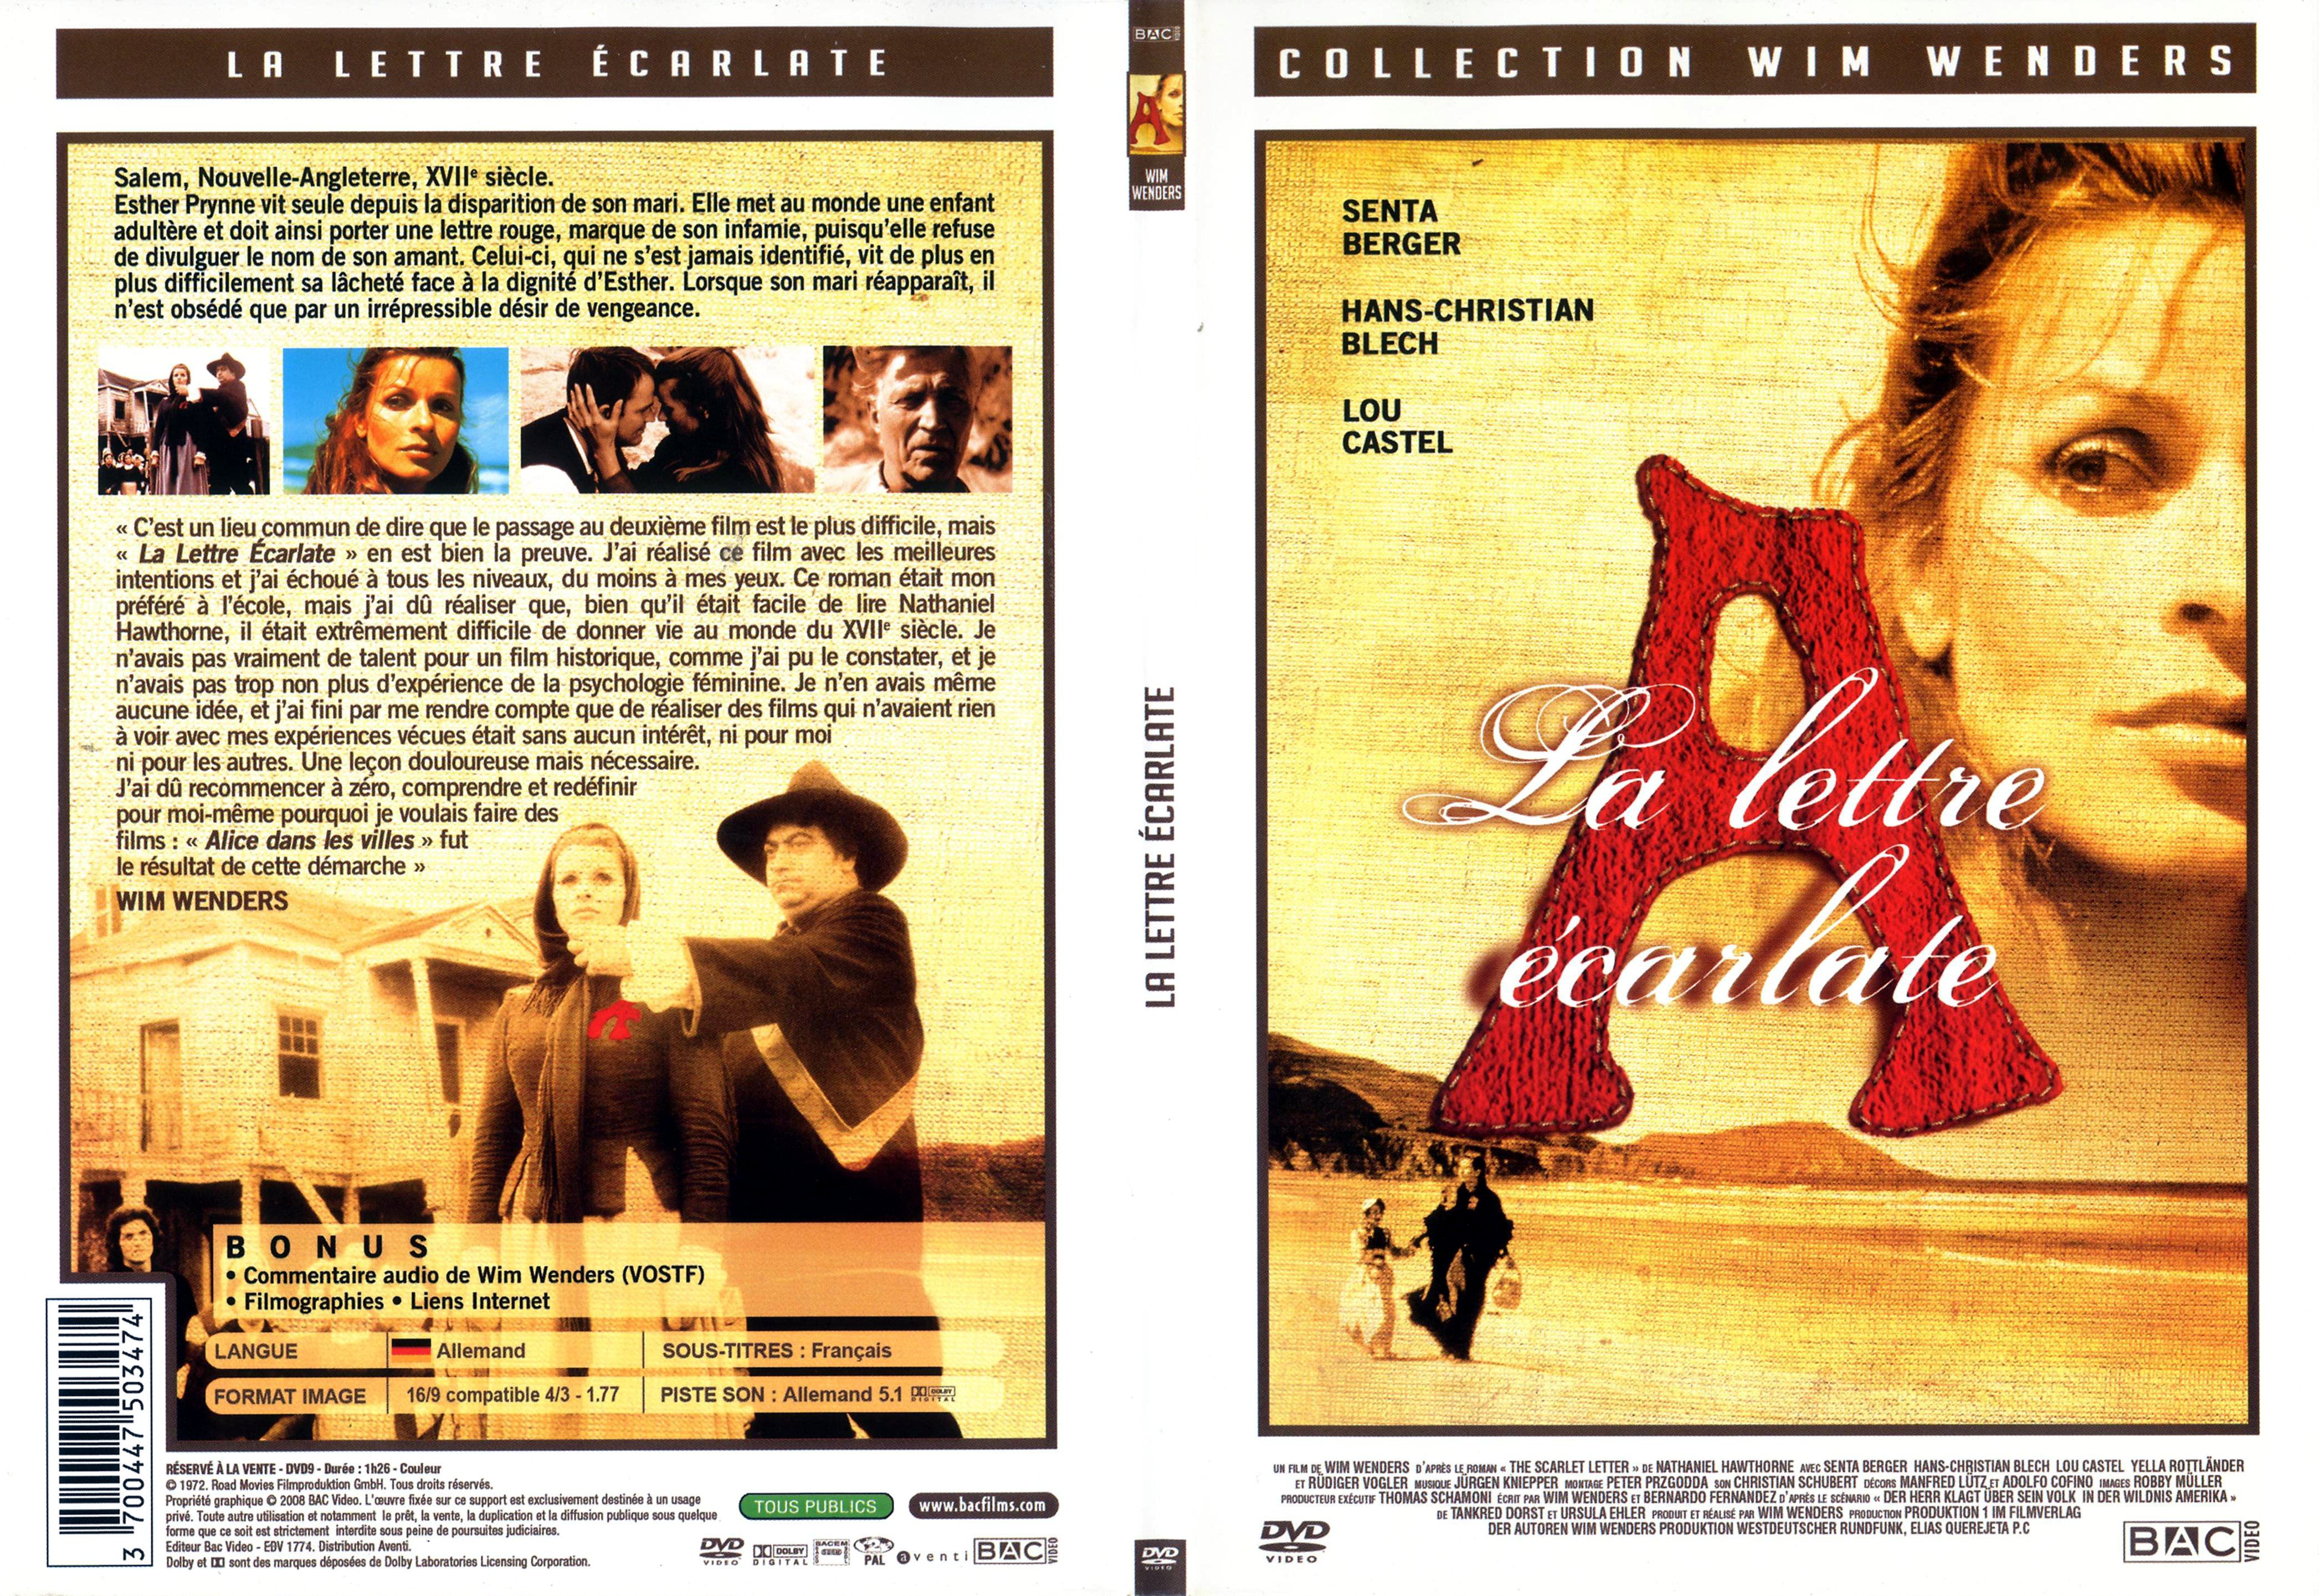 Jaquette DVD La lettre ecarlate (1972) - SLIM